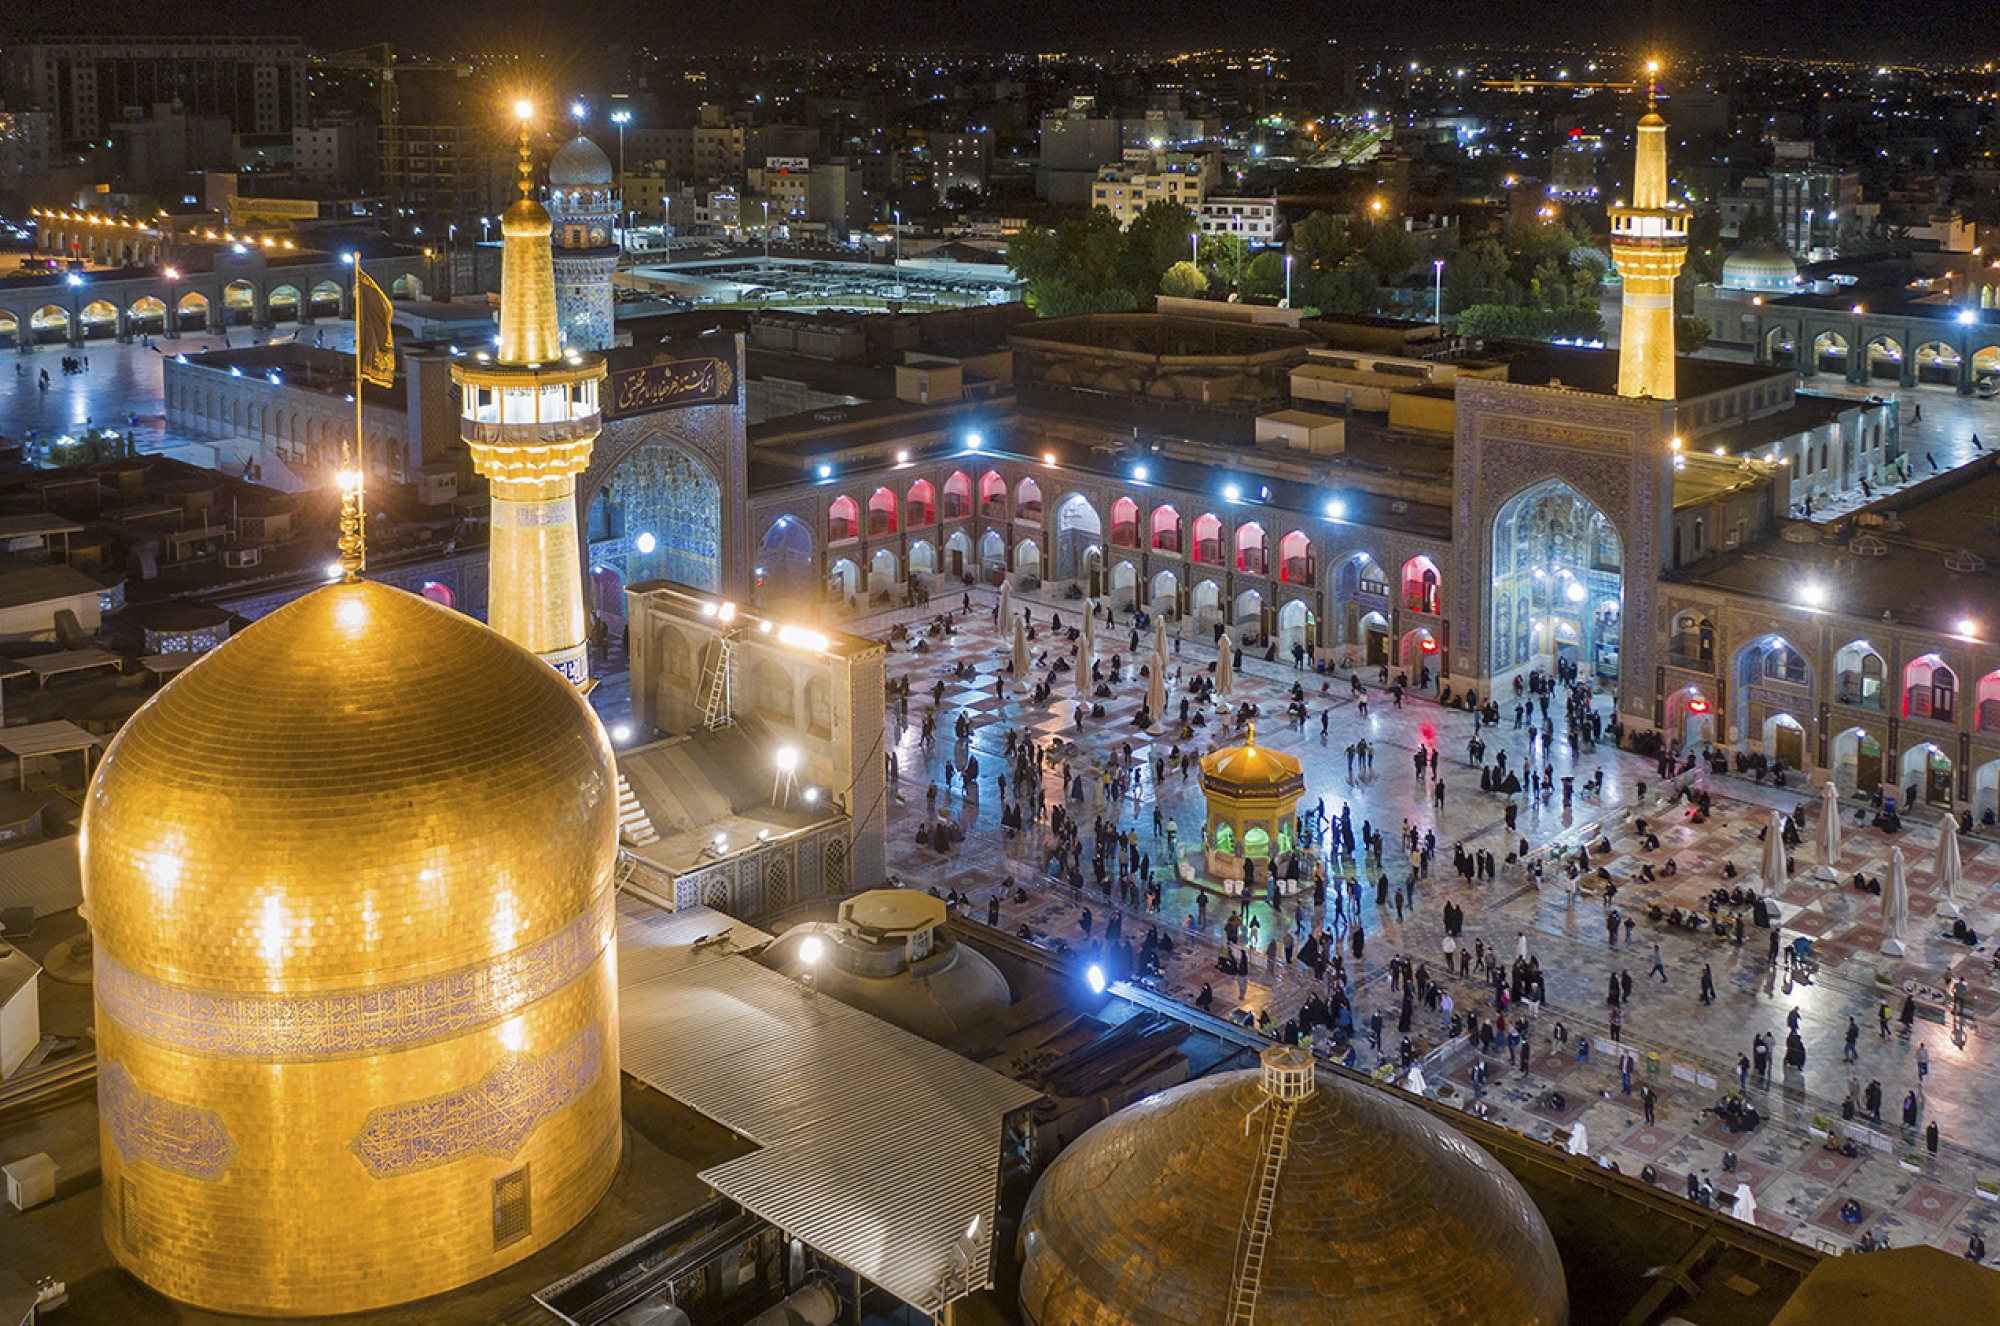 عکس با کیفیت : عکس هوایی از حرم امام رضا علیه السلام